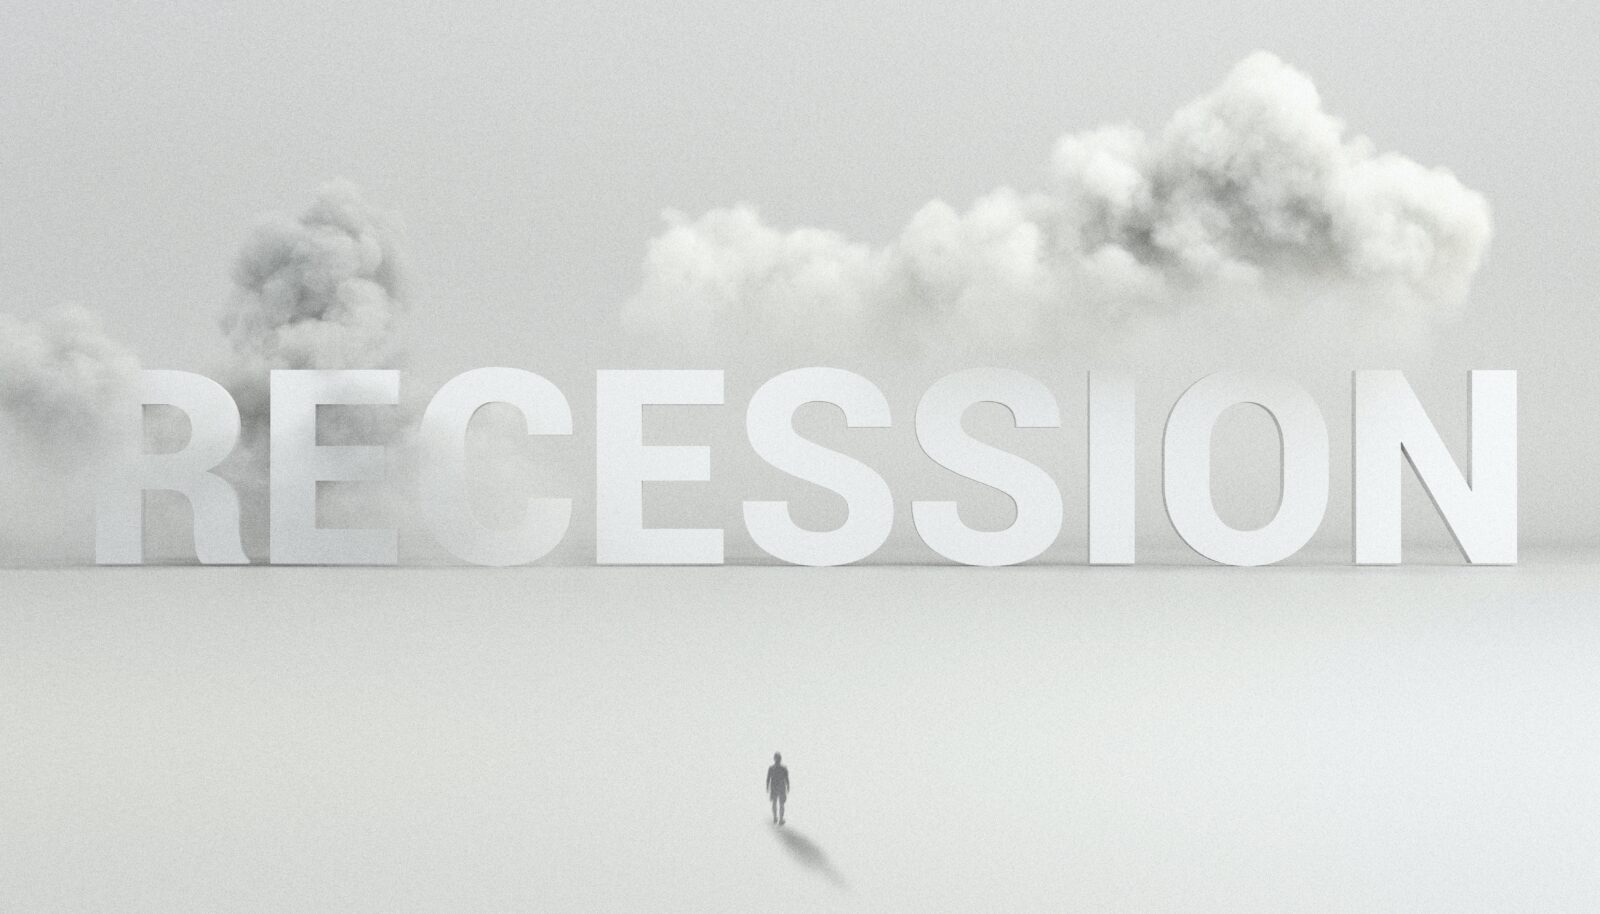 Die Rezession kommt: Zukunftssicher mit deinem Unternehmen agieren - Quelle: ©D koi - unsplash.com